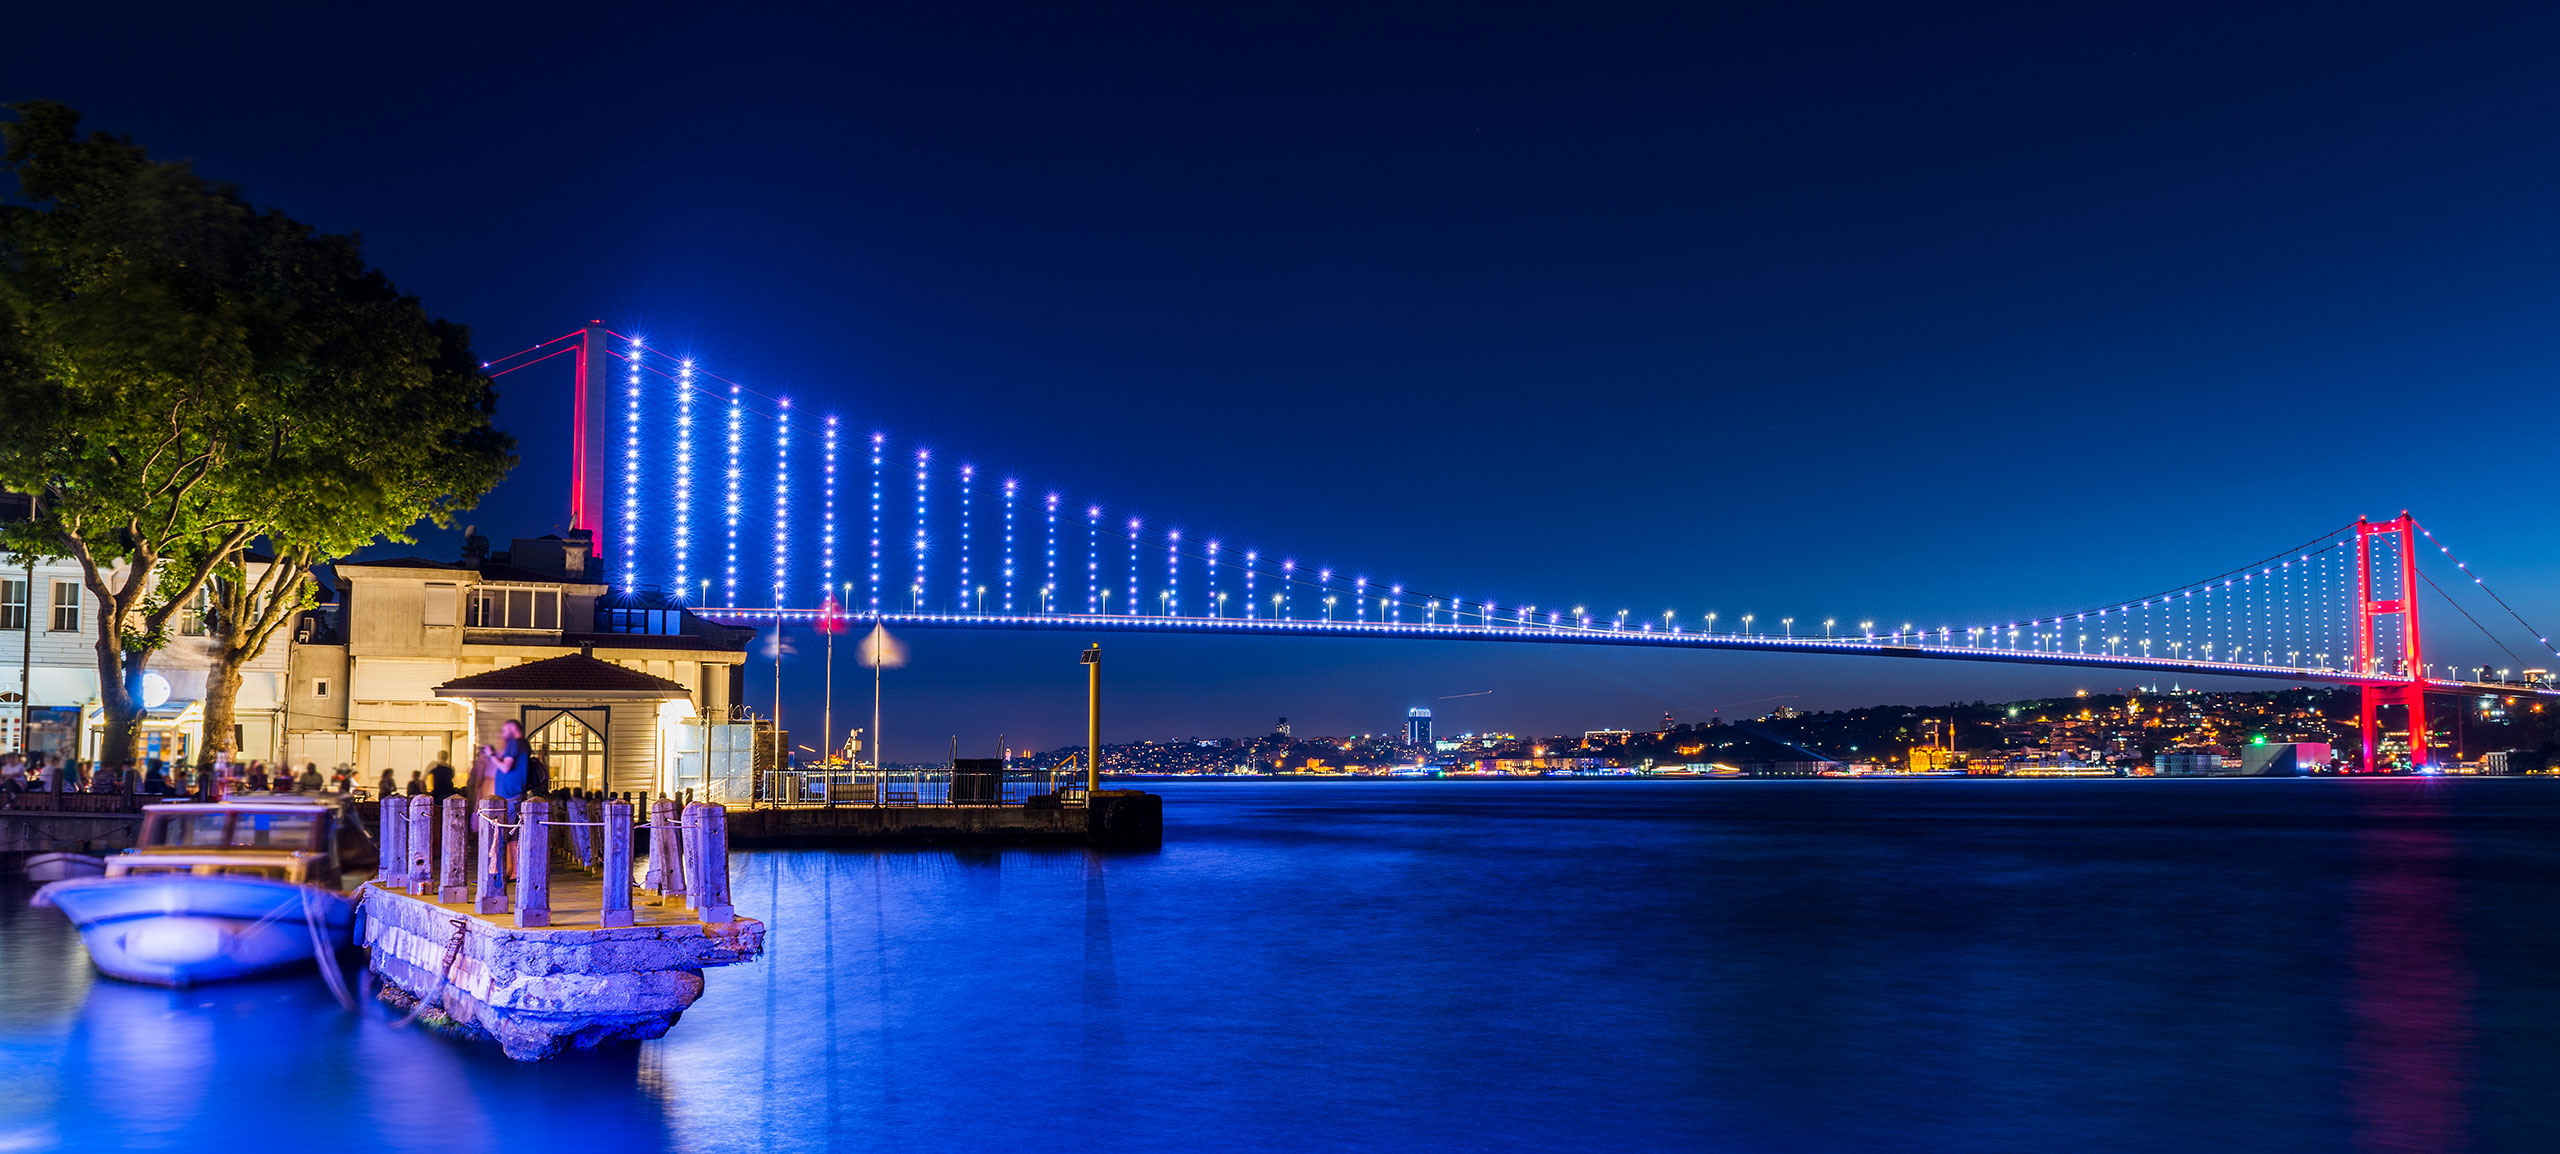 Ολοκληρώθηκε ο μεγάλος διαγωνισμός του Znews για το ταξίδι στην Κωνσταντινούπολη